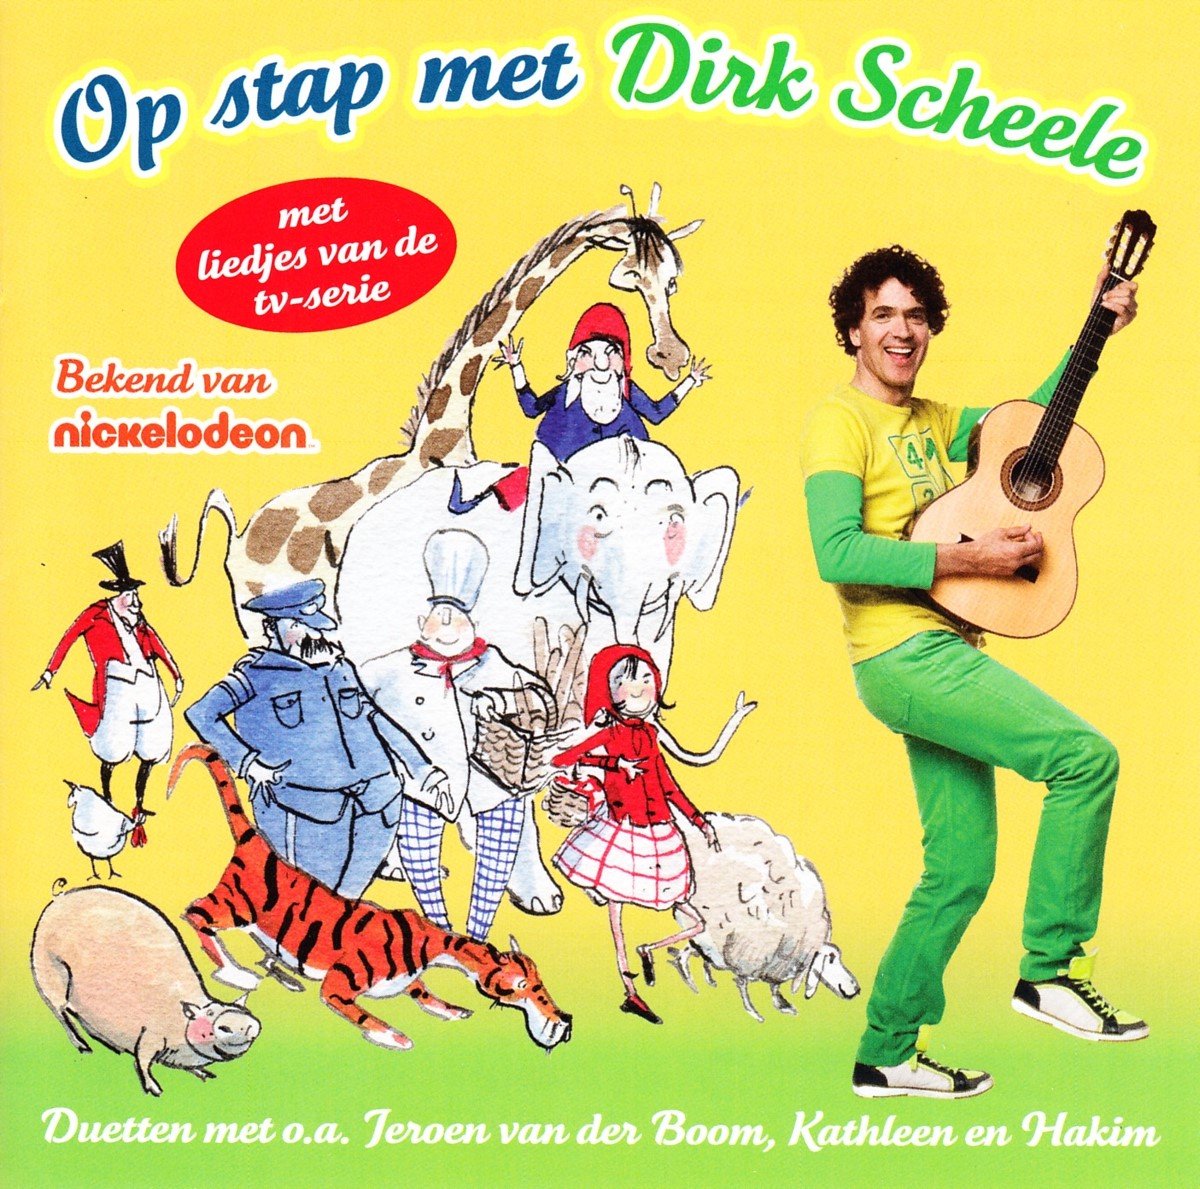 Dirk Scheele - Op Stap Met Dirk Scheele (CD) - Dirk Scheele